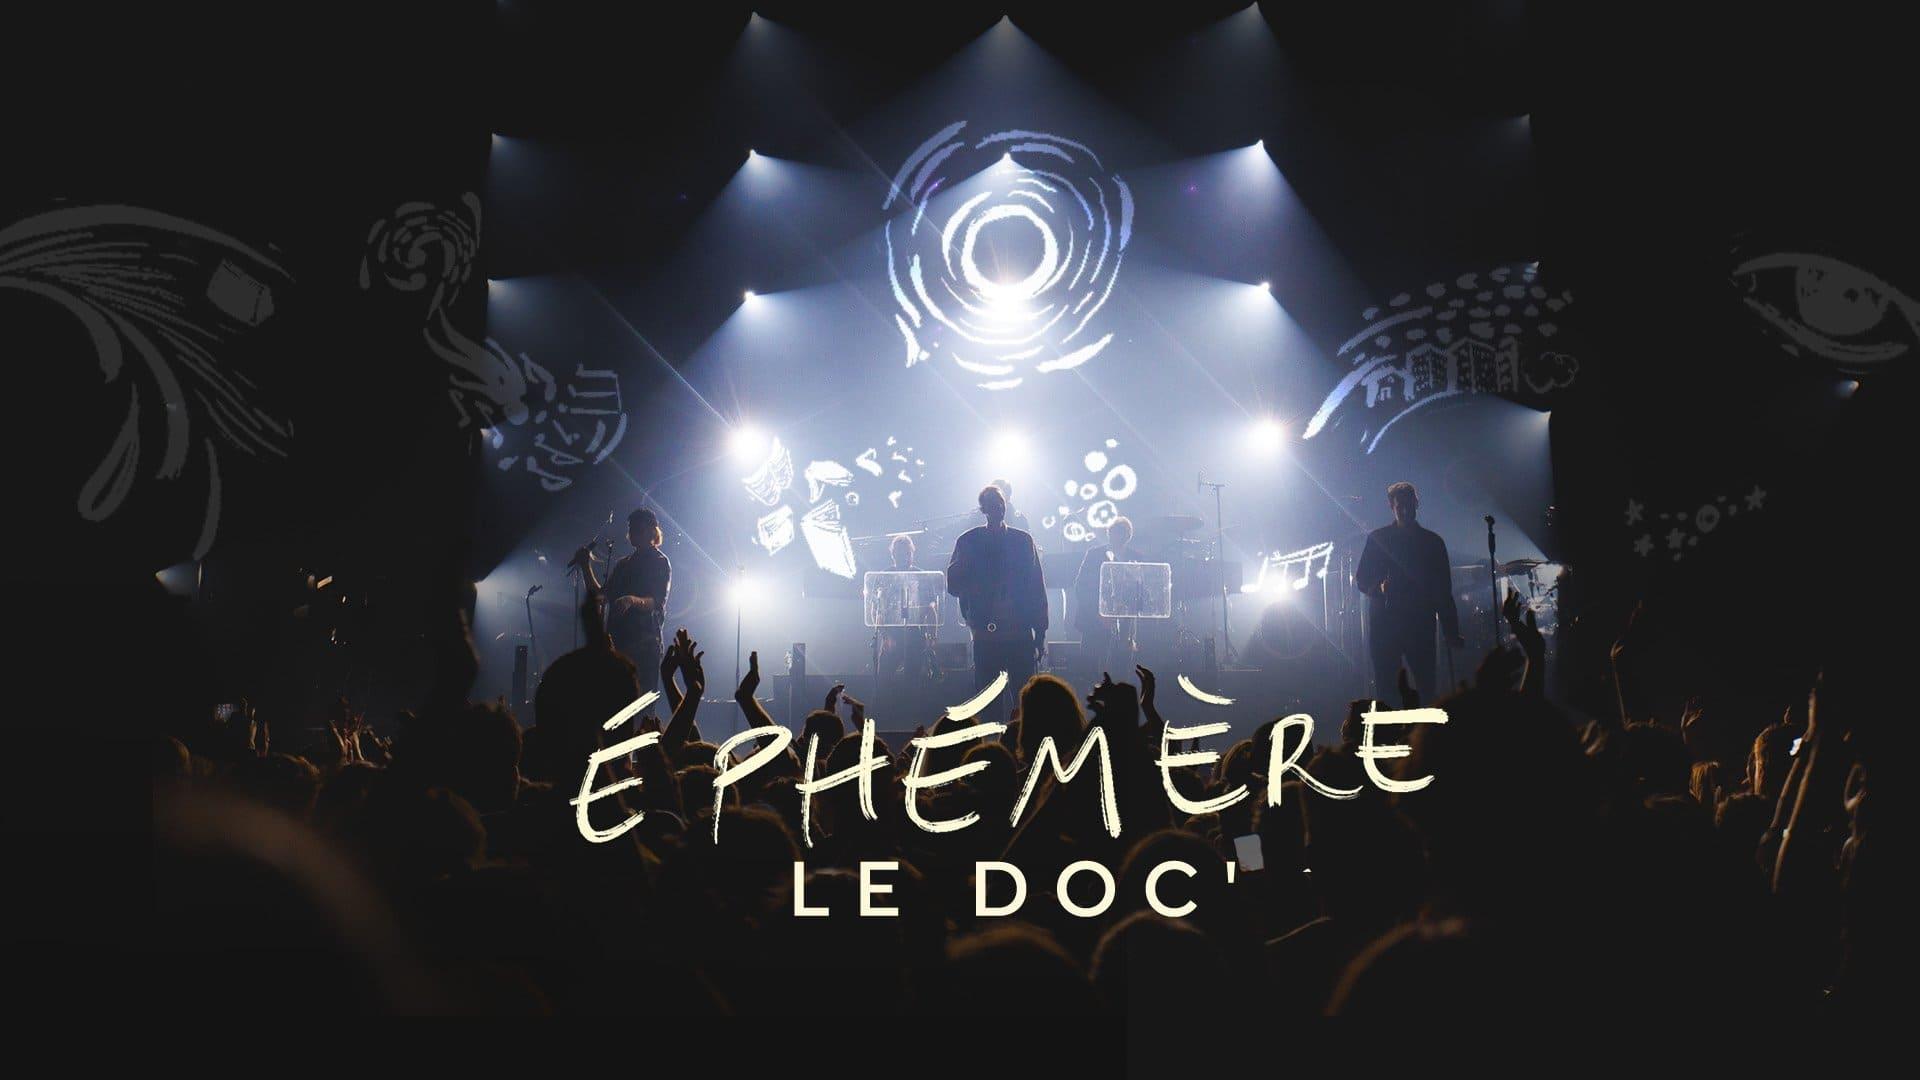 Ephémère, le doc' backdrop